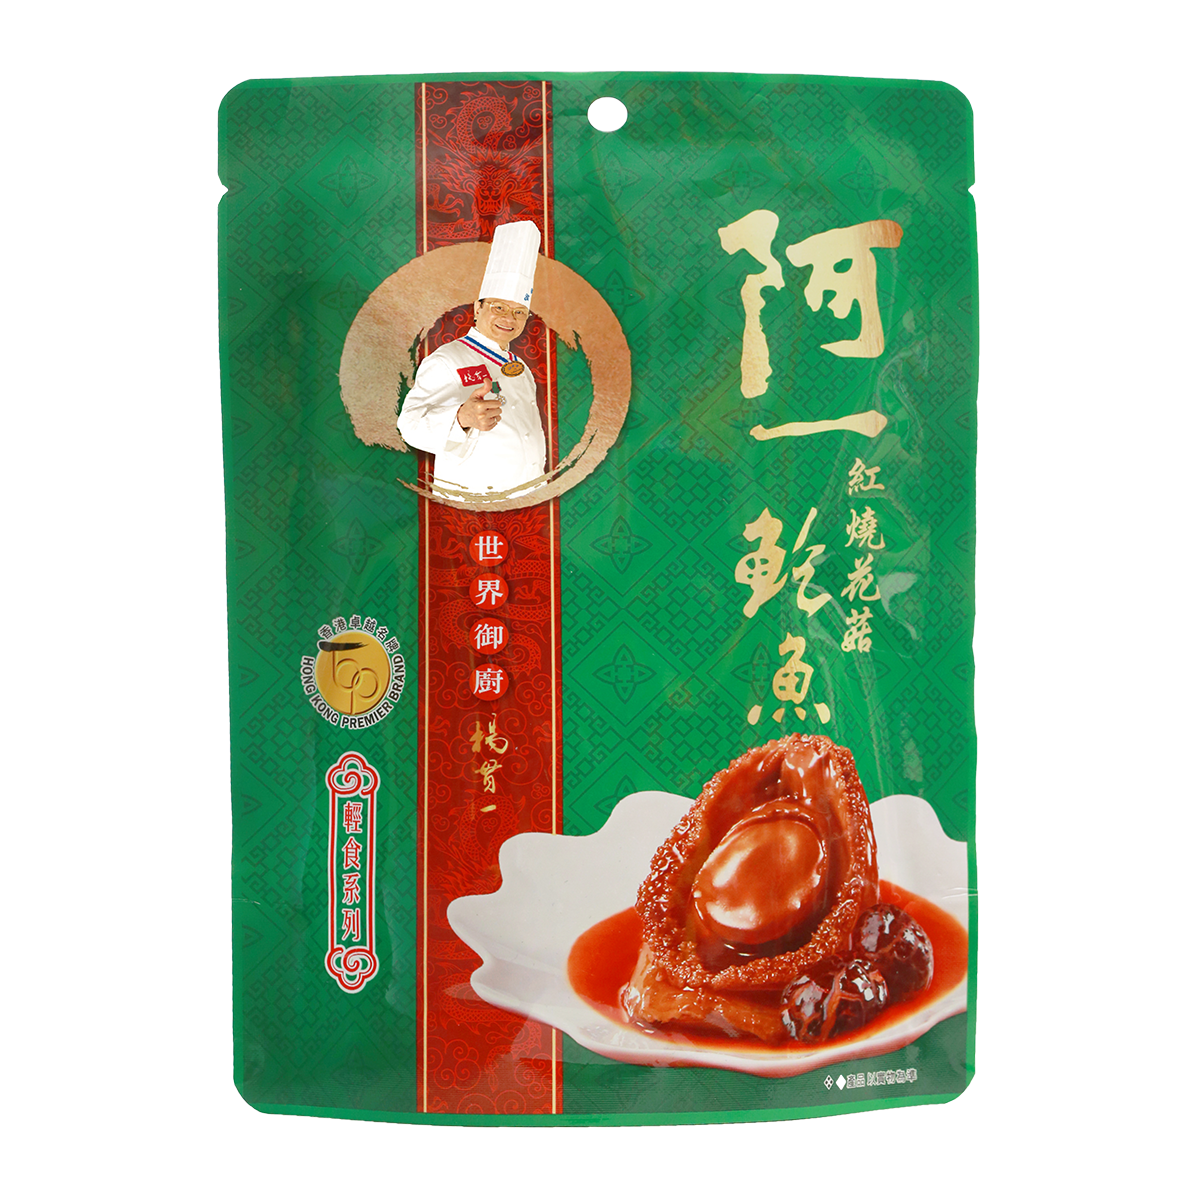 阿一鲍鱼 - 红烧花菇鲍鱼(4-6隻袋装)美味食材 加热即食 软嫩腍滑